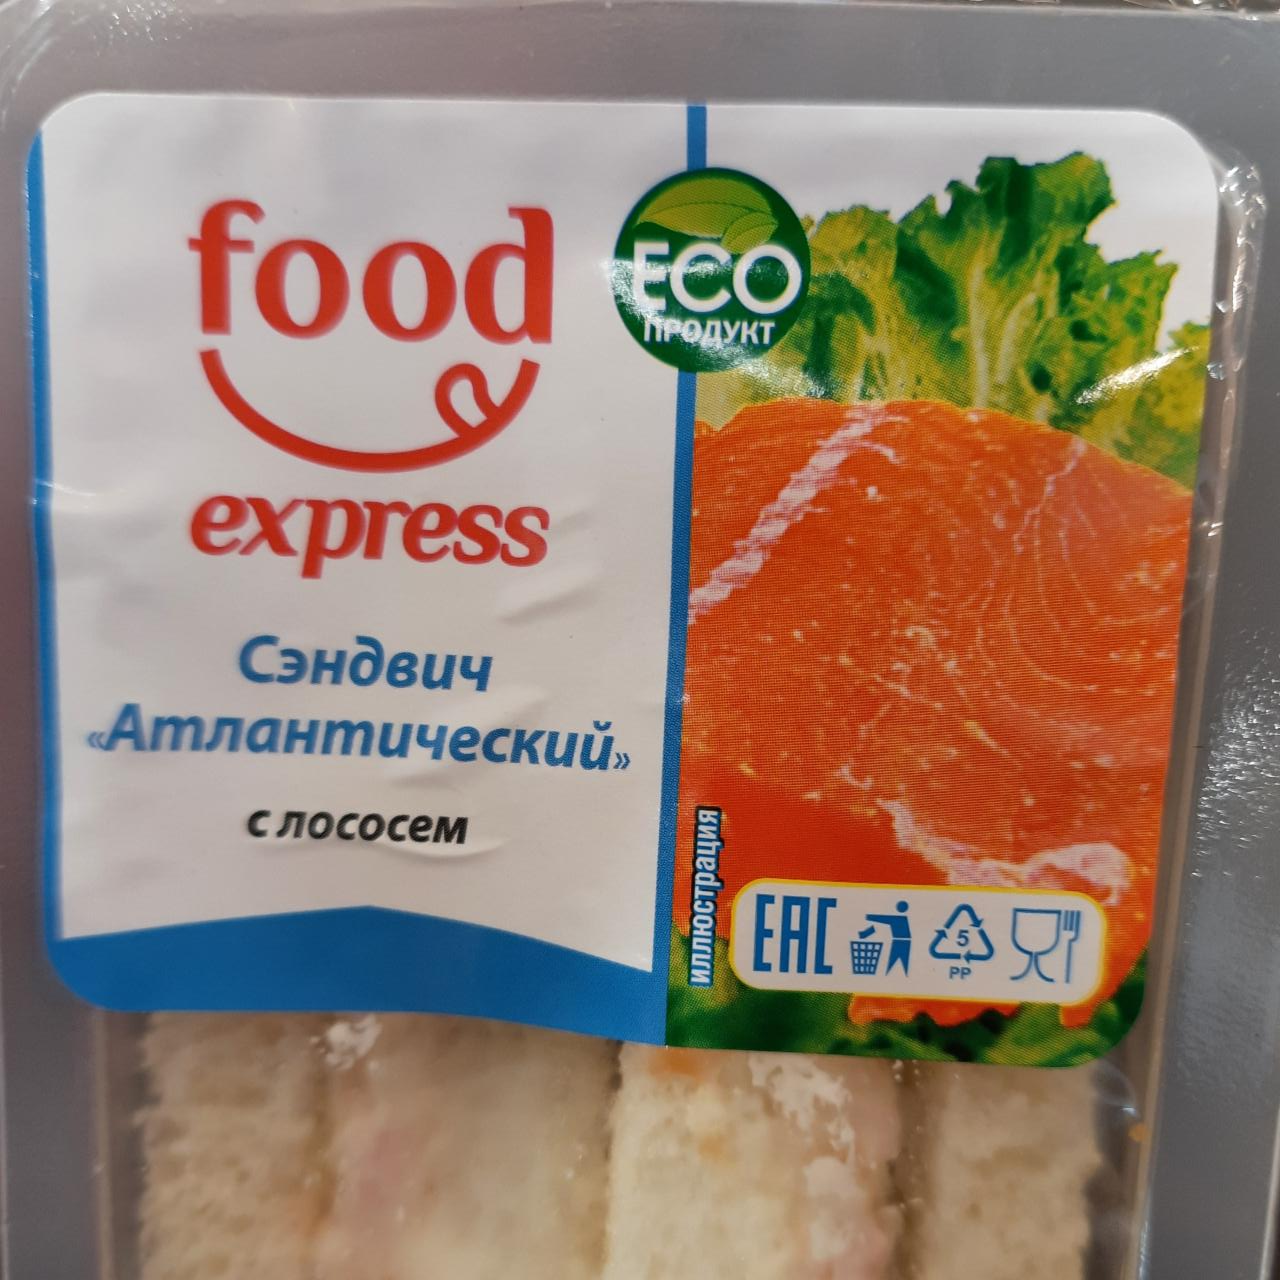 Фото - Сэндвич атлантический с лососем Food Express